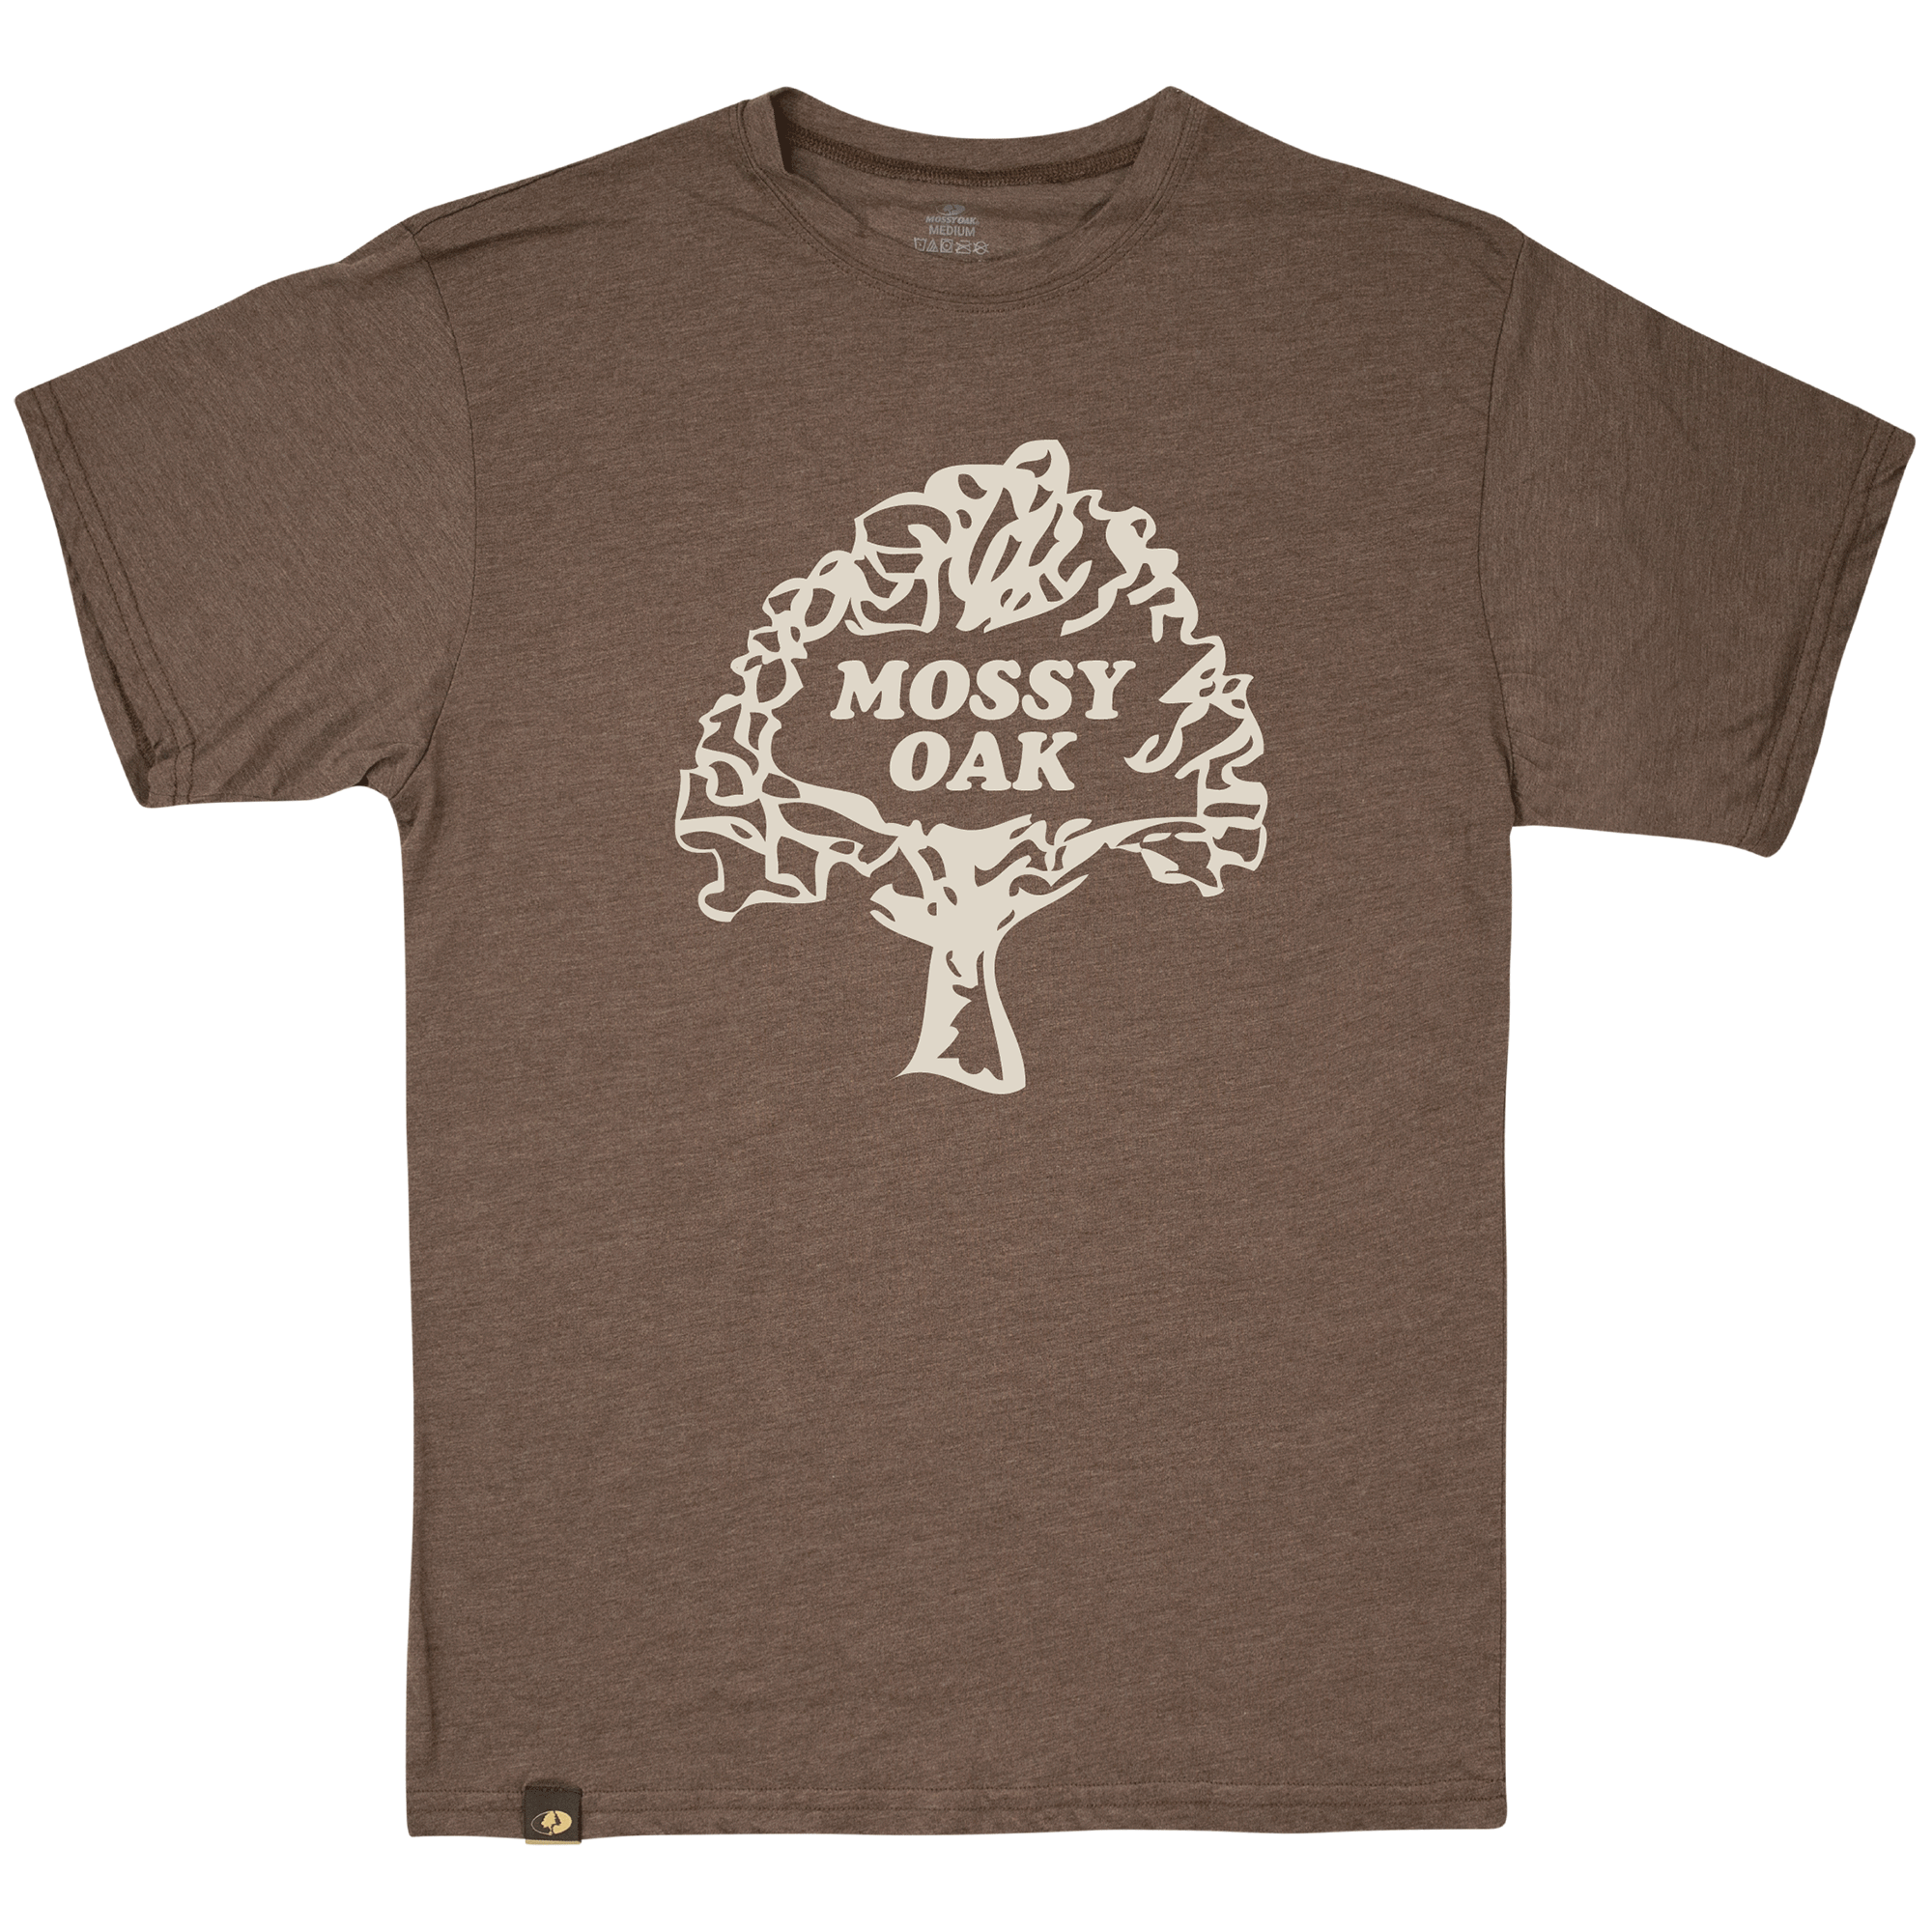 Vintage mossy oak t-shirt - Gem